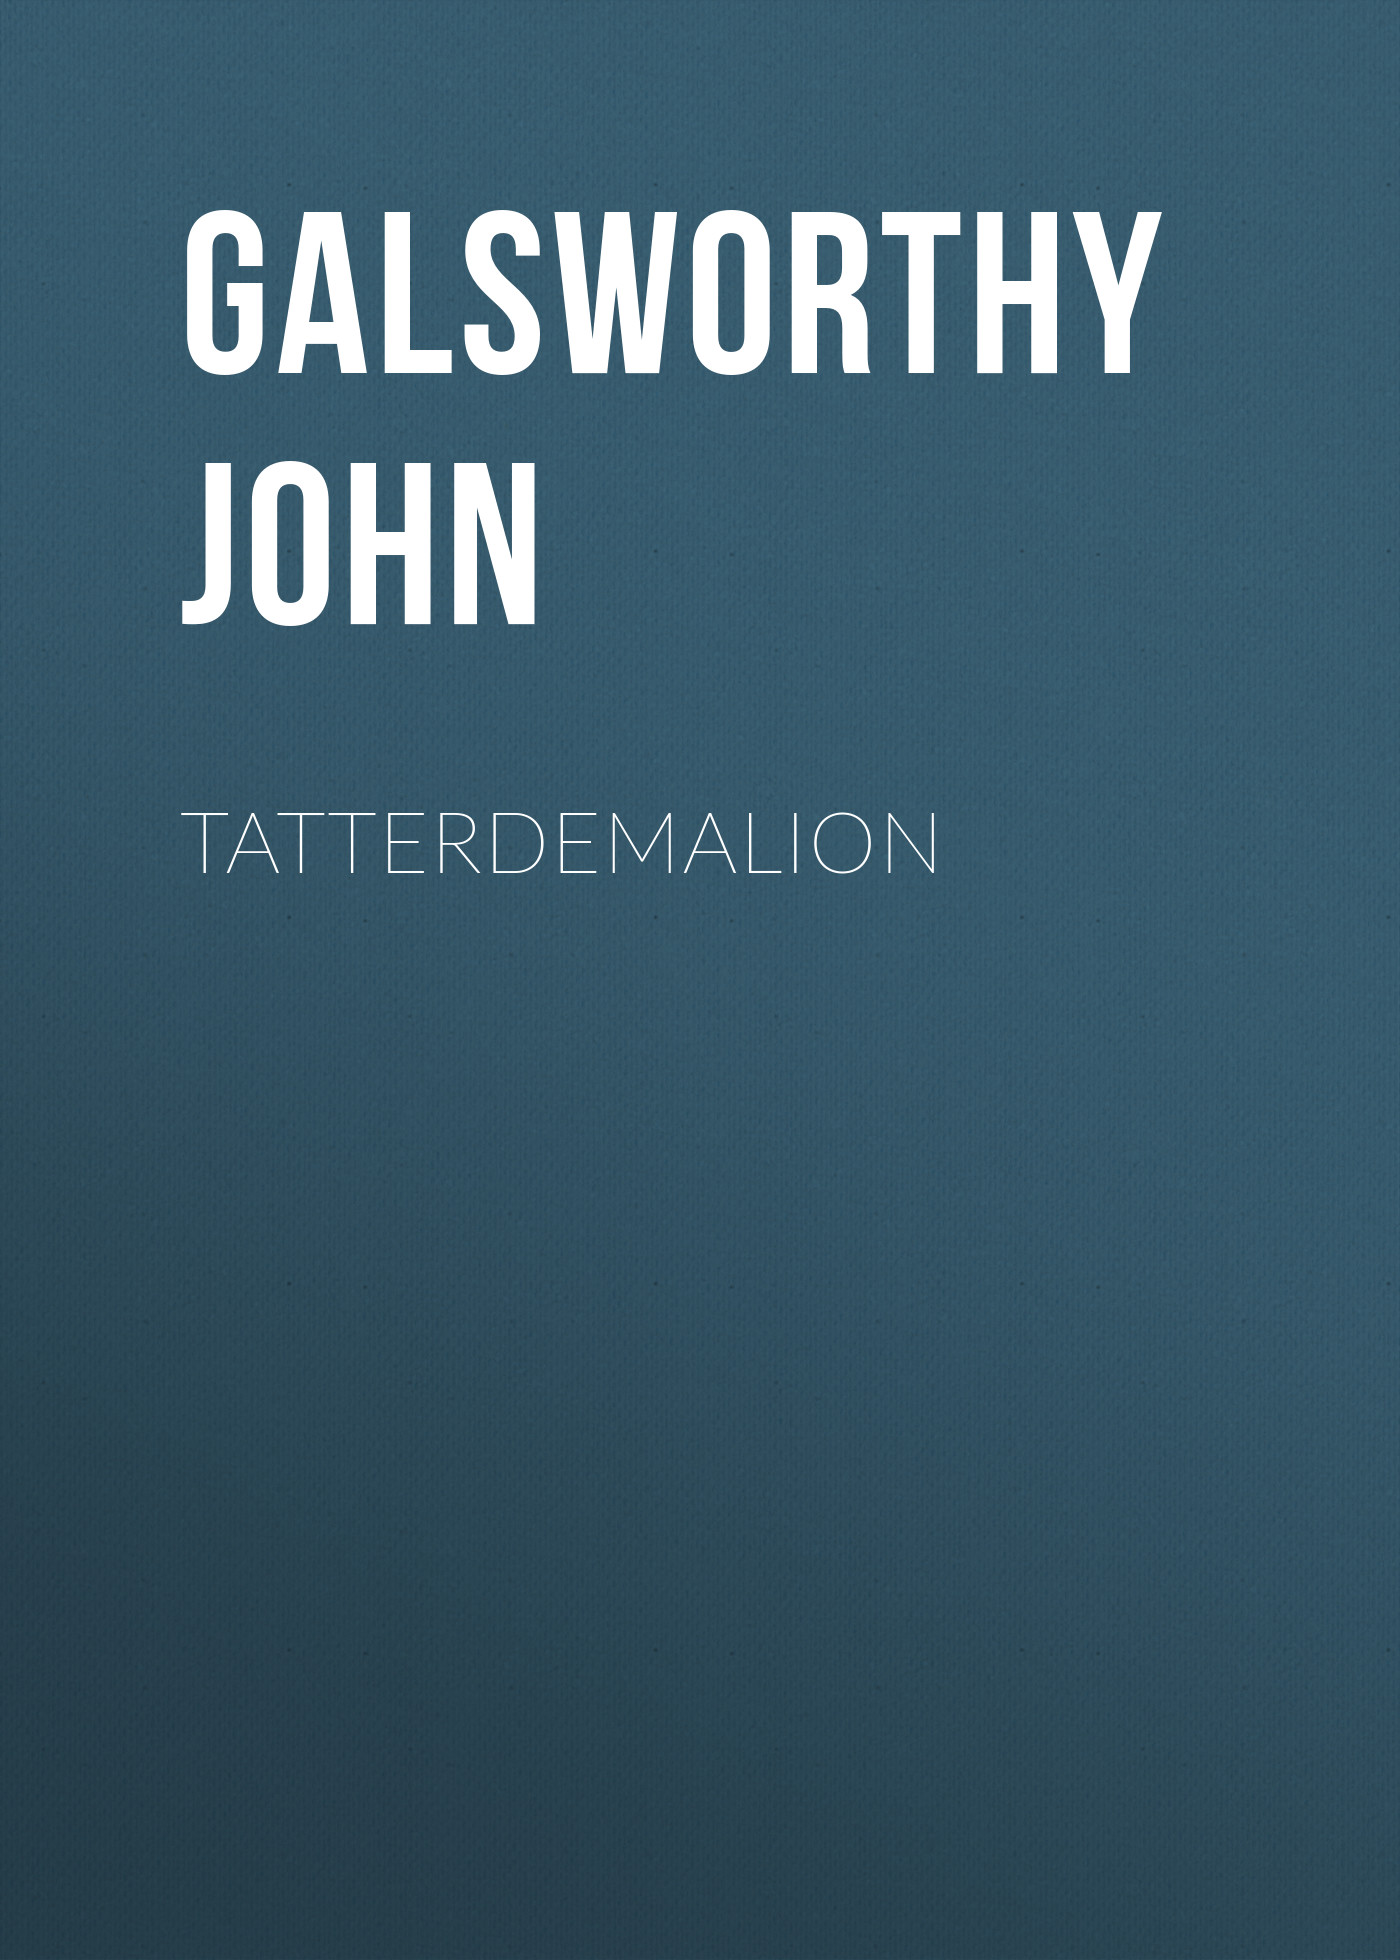 Книга Tatterdemalion из серии , созданная John Galsworthy, может относится к жанру История, Зарубежная старинная литература, Зарубежная классика. Стоимость книги Tatterdemalion  с идентификатором 24859579 составляет 0 руб.